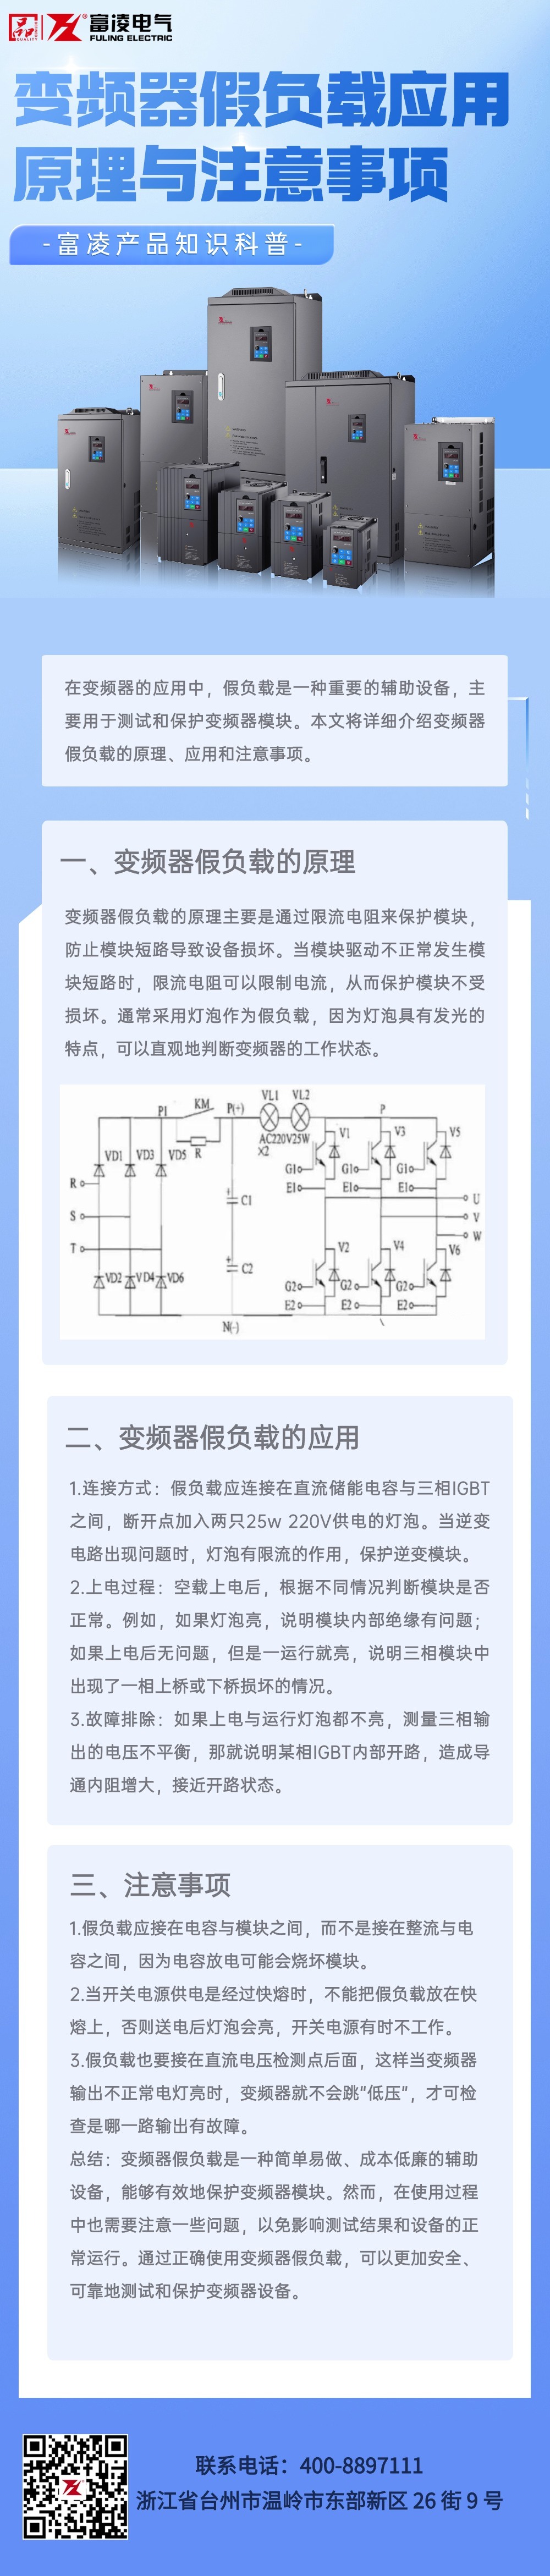 金融期货期权知识科普2.5D轻拟物风文章长图(1)(1).jpg